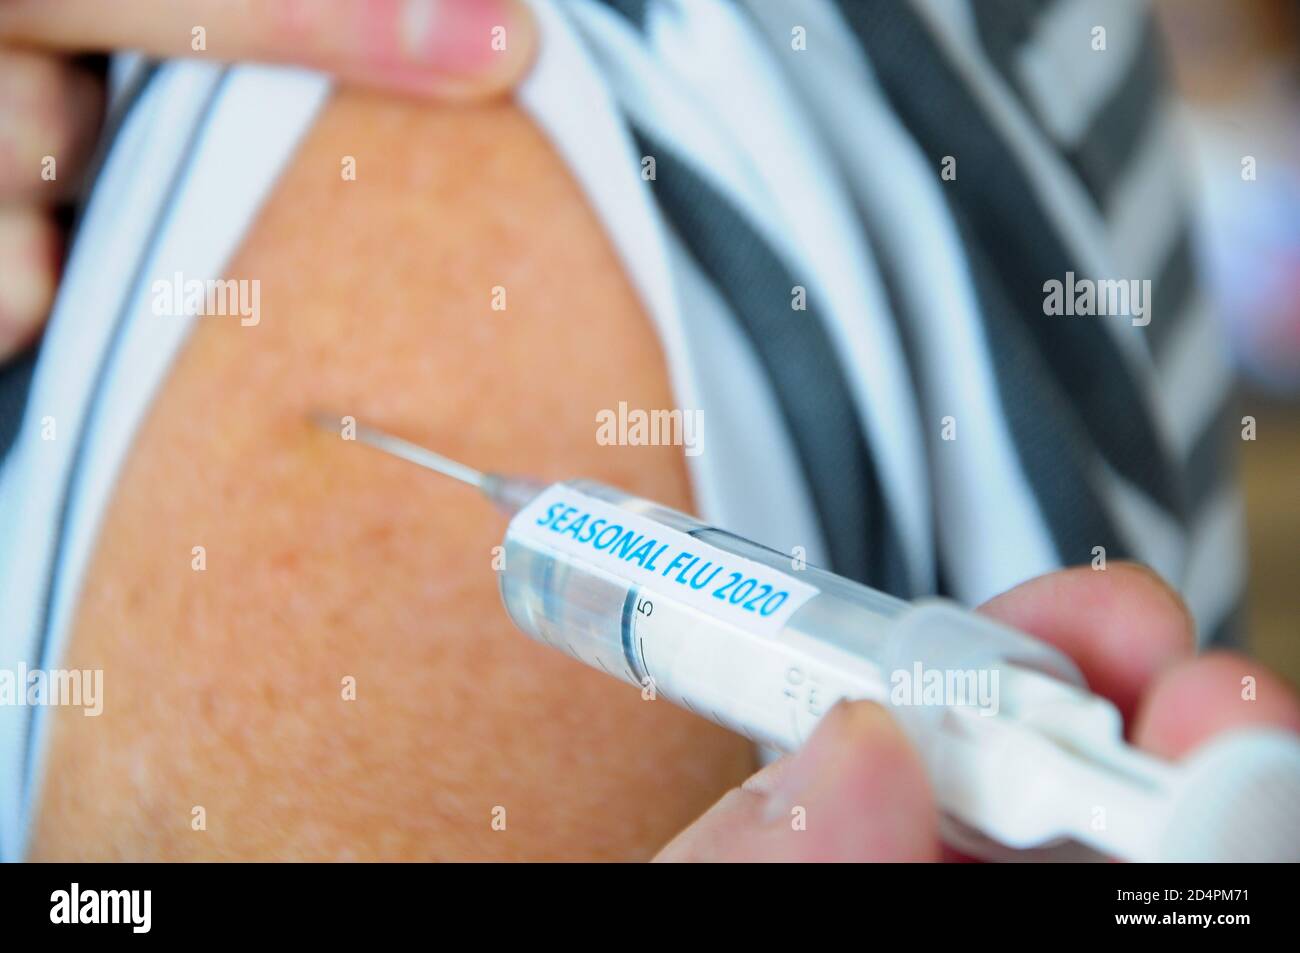 Portland. 10ème Octonber 2020. Grippe saisonnière, Royaume-Uni. Une femme est vaccinée avec une seringue portant une étiquette portant la mention « SeASONAL FLU 2020 ». Crédit : stuart fre Banque D'Images